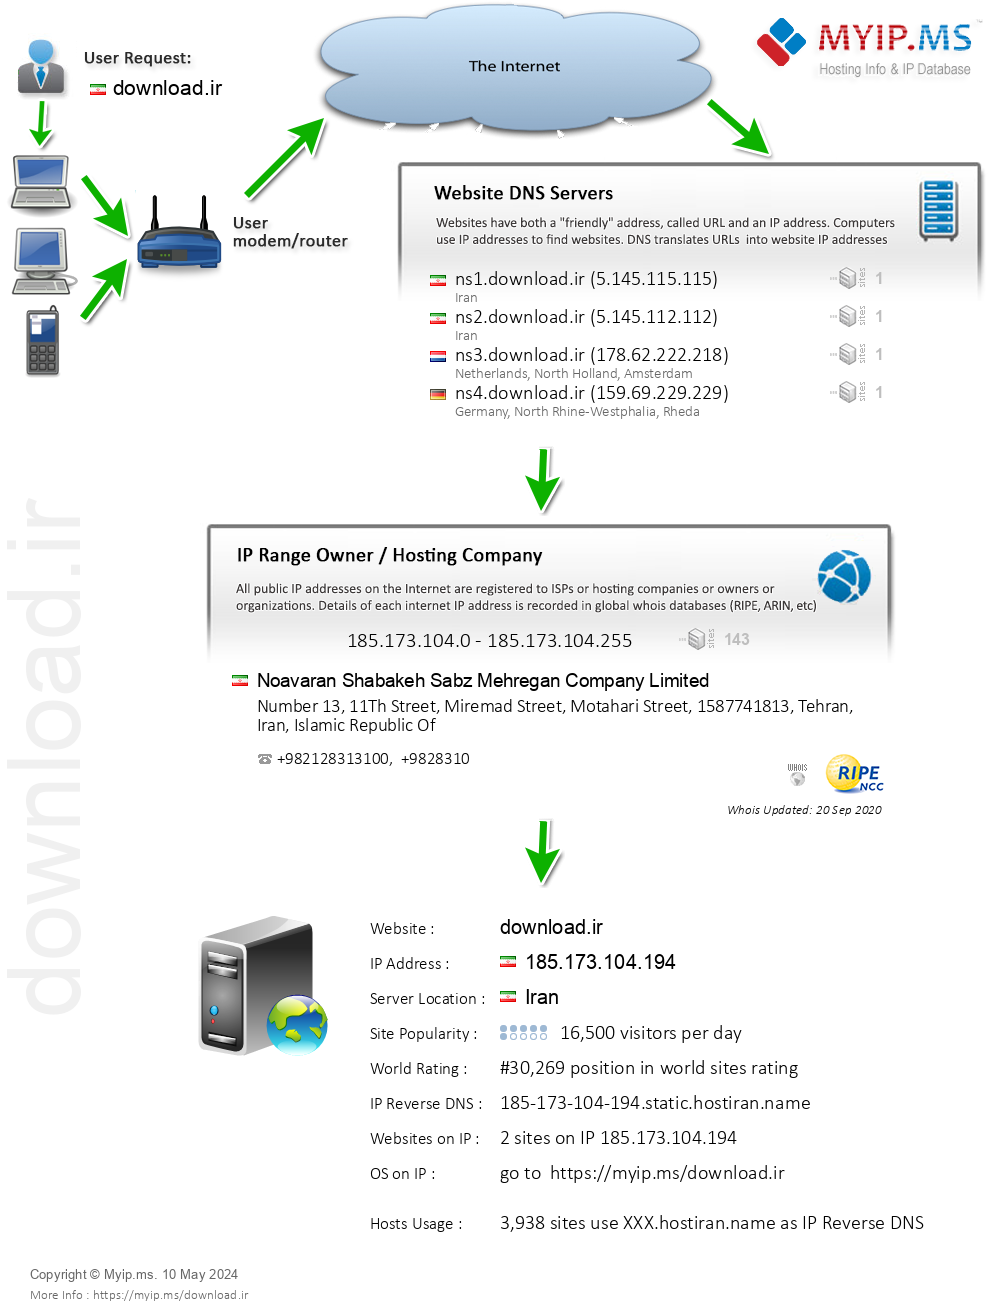 Download.ir - Website Hosting Visual IP Diagram